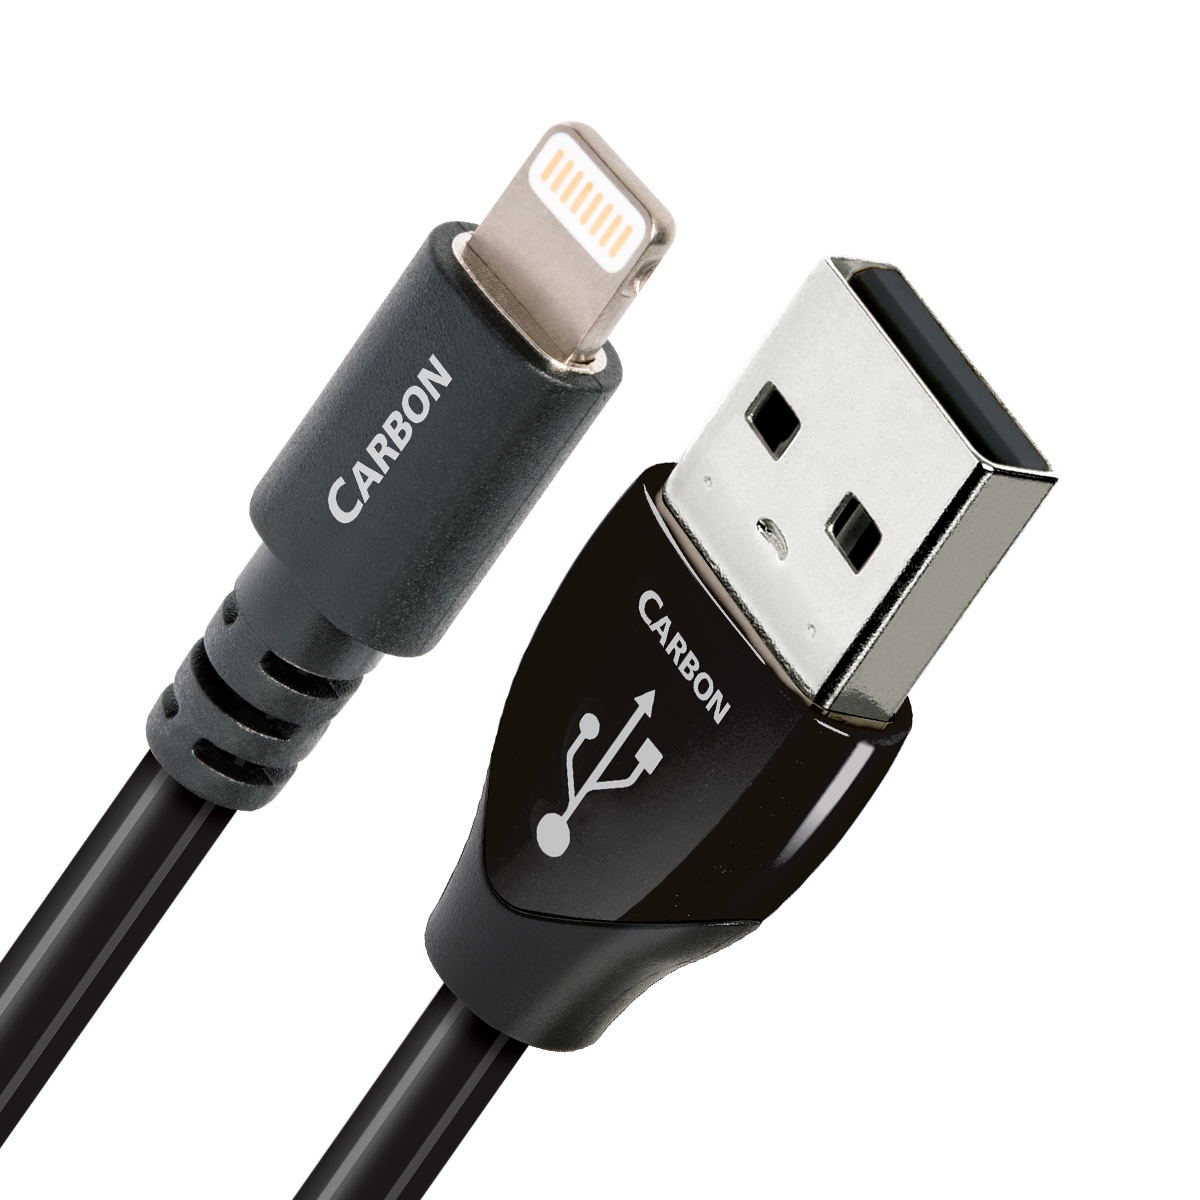 AudioQuest Carbon Lightning USB kabel - Kabler - Digitalkabel